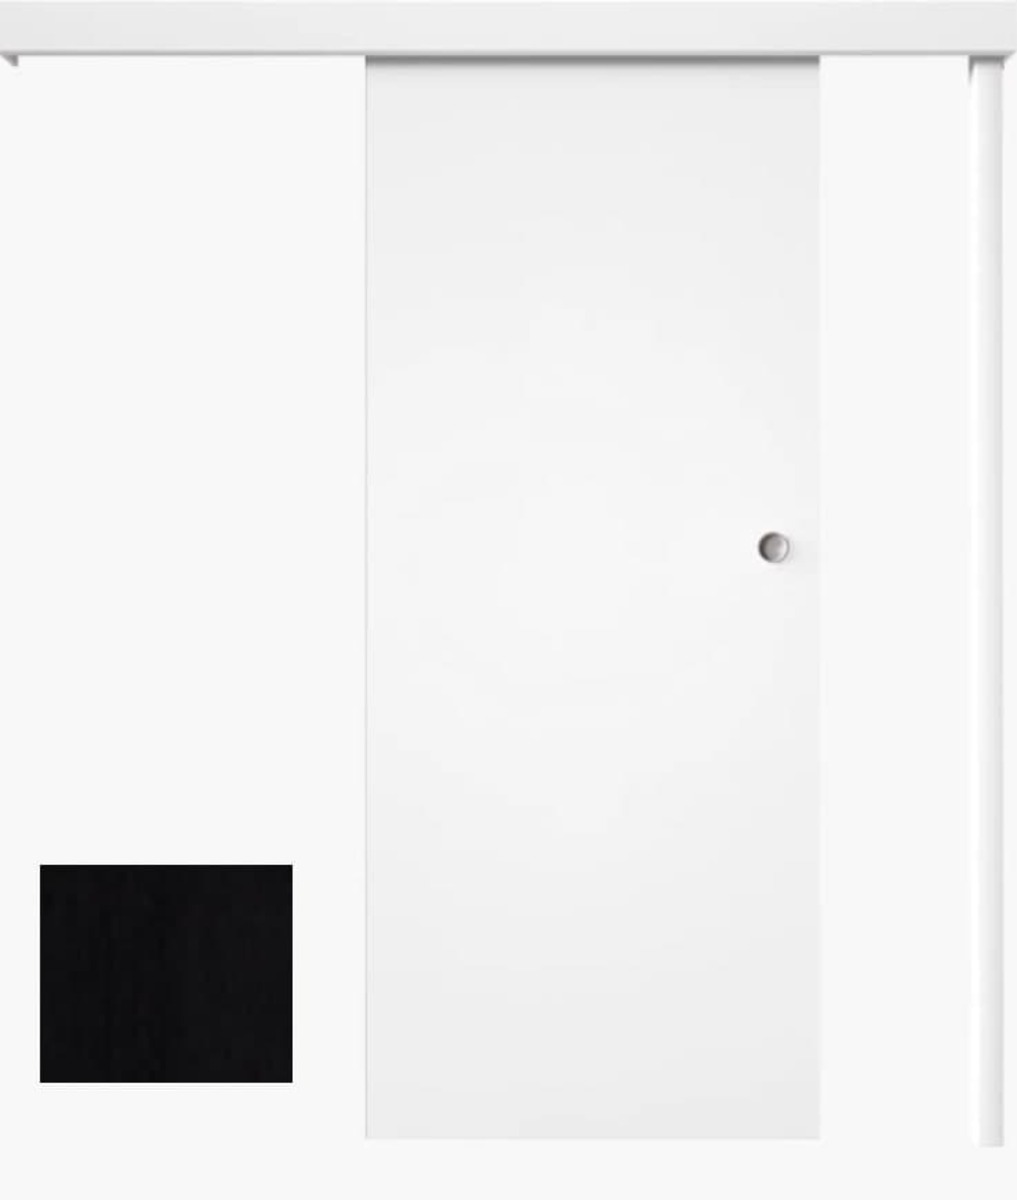 Posuvný systém na stěnu Naturel pro dveře 80cm černý matný POSUVNSCER80 Naturel